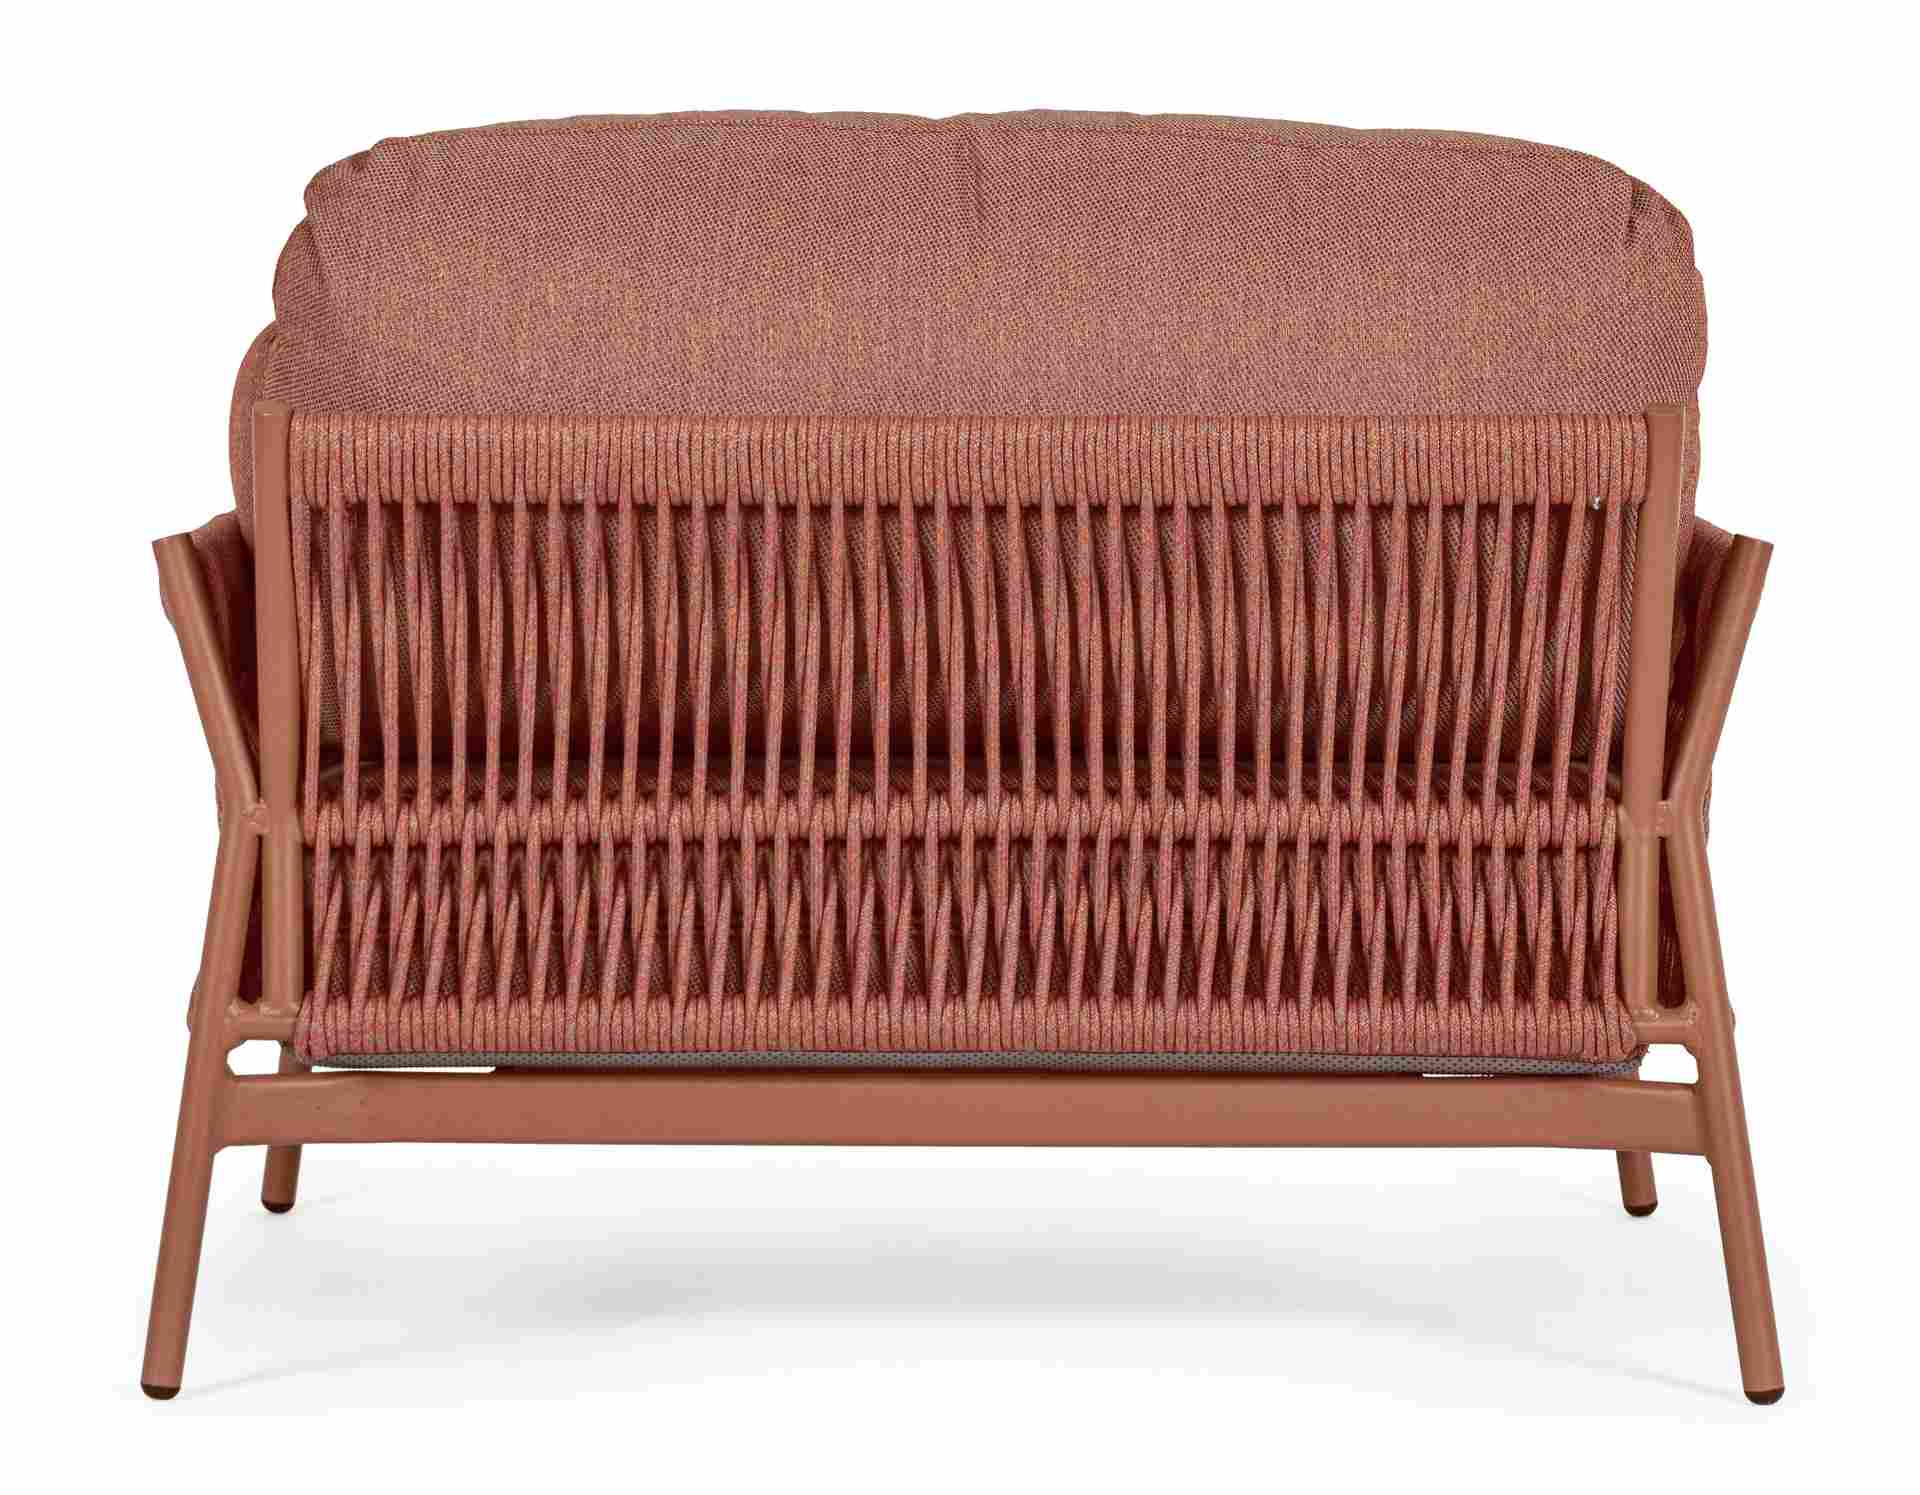 Der Gartensessel Pardis überzeugt mit seinem modernen Design. Gefertigt wurde er aus Olefin-Stoff, welcher einen roten Farbton besitzt. Das Gestell ist aus Aluminium und hat eine rote Farbe. Der Sessel verfügt über eine Sitzhöhe von 38 cm und ist für den 